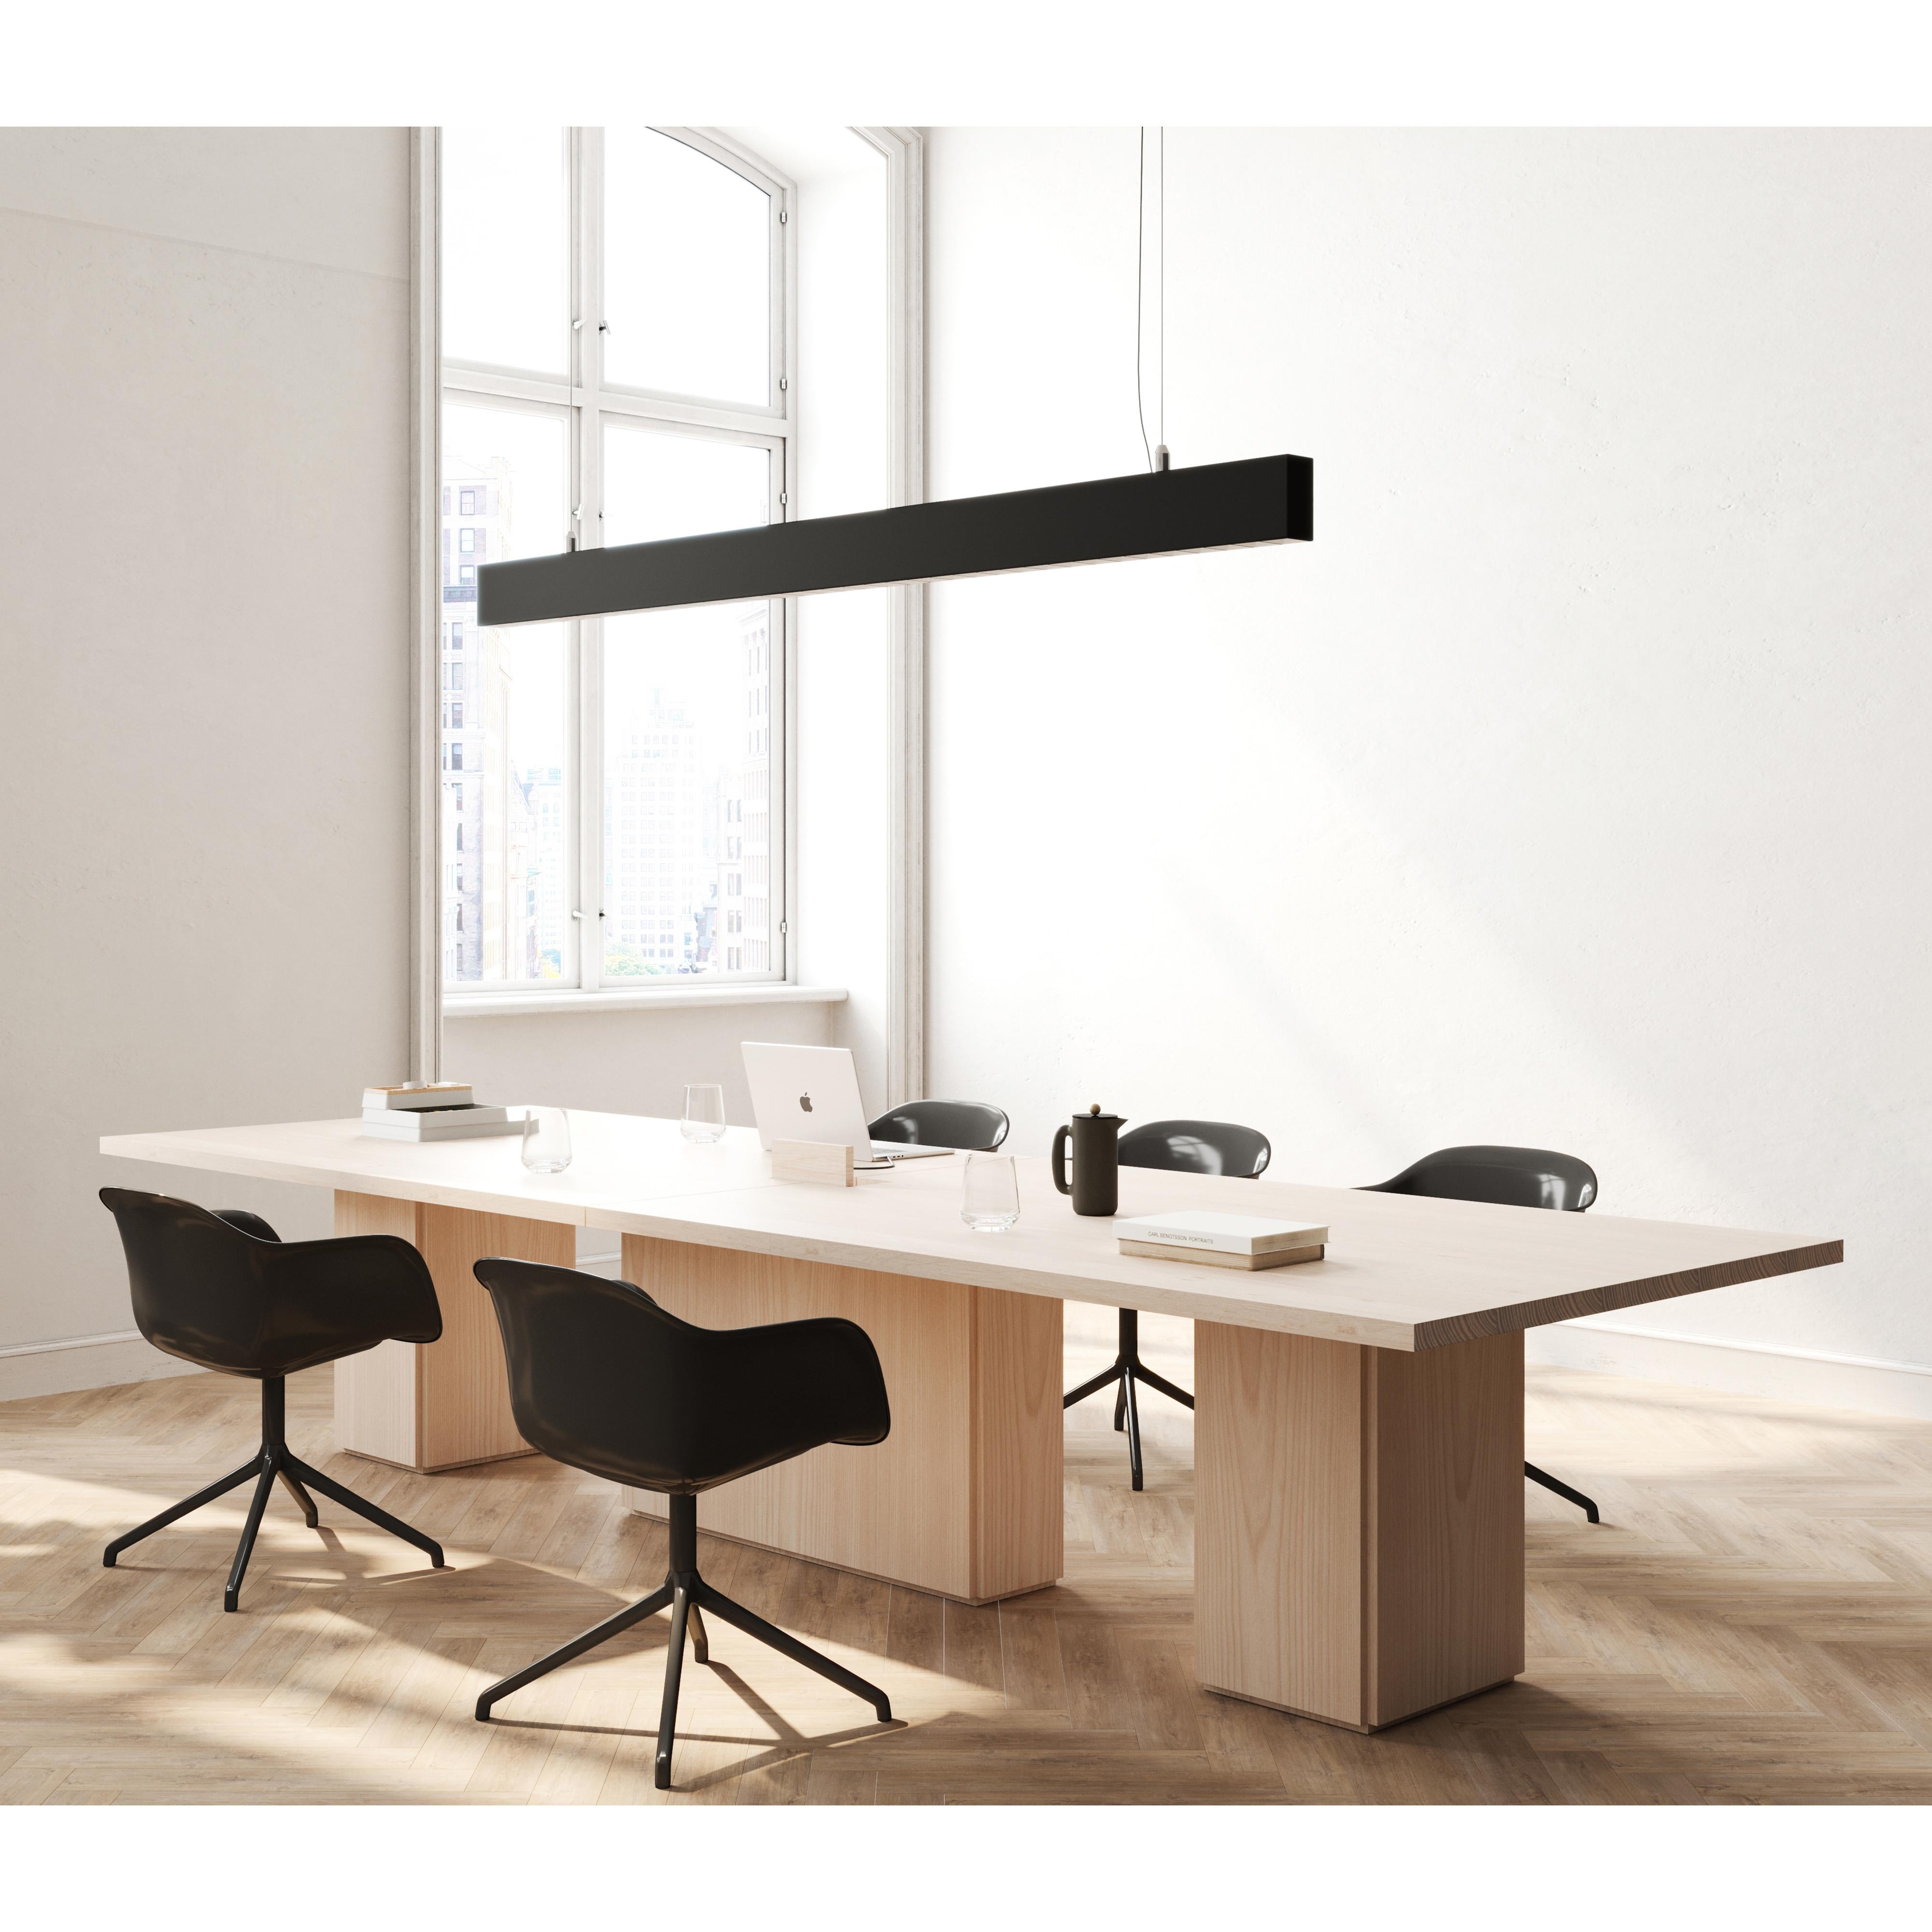 La table de conférence en dalle présente une silhouette architecturale dans les espaces de travail, ajoutant de la dimension sans nuire à l'esthétique générale. 

La forme géométrique de cette table simple comprend un plateau rectangulaire en bois